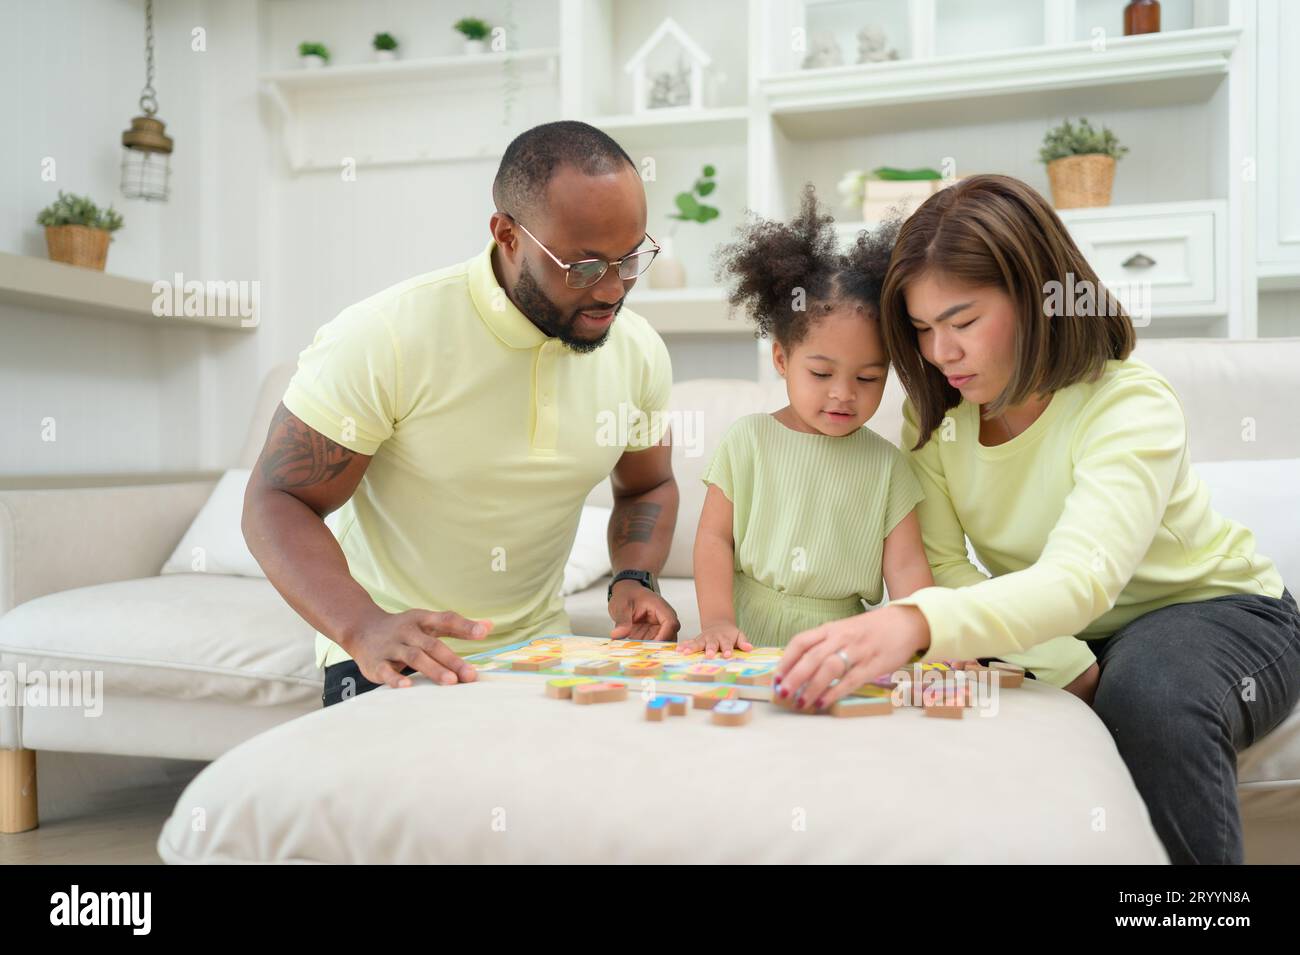 Père, mère et un enfant se reposant et s'amusant ensemble pendant leurs vacances à la maison. Banque D'Images